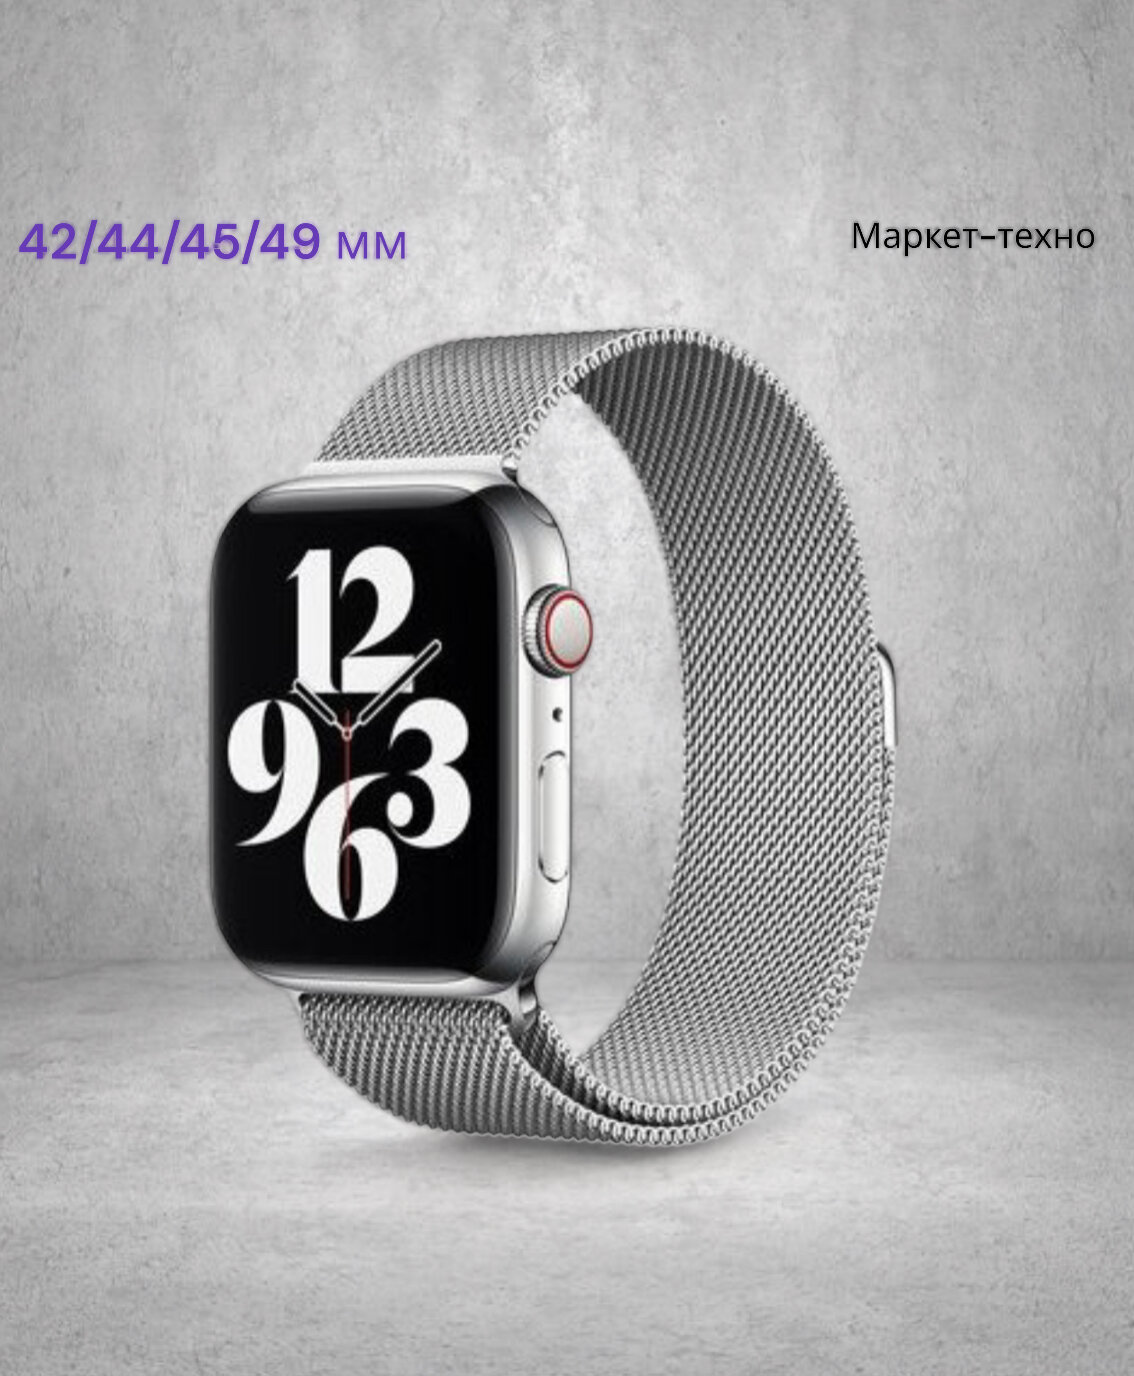 Ремешок миланcкий из нержавеющей стали для Apple Watch 42/44/45/49мм (1), серебряный